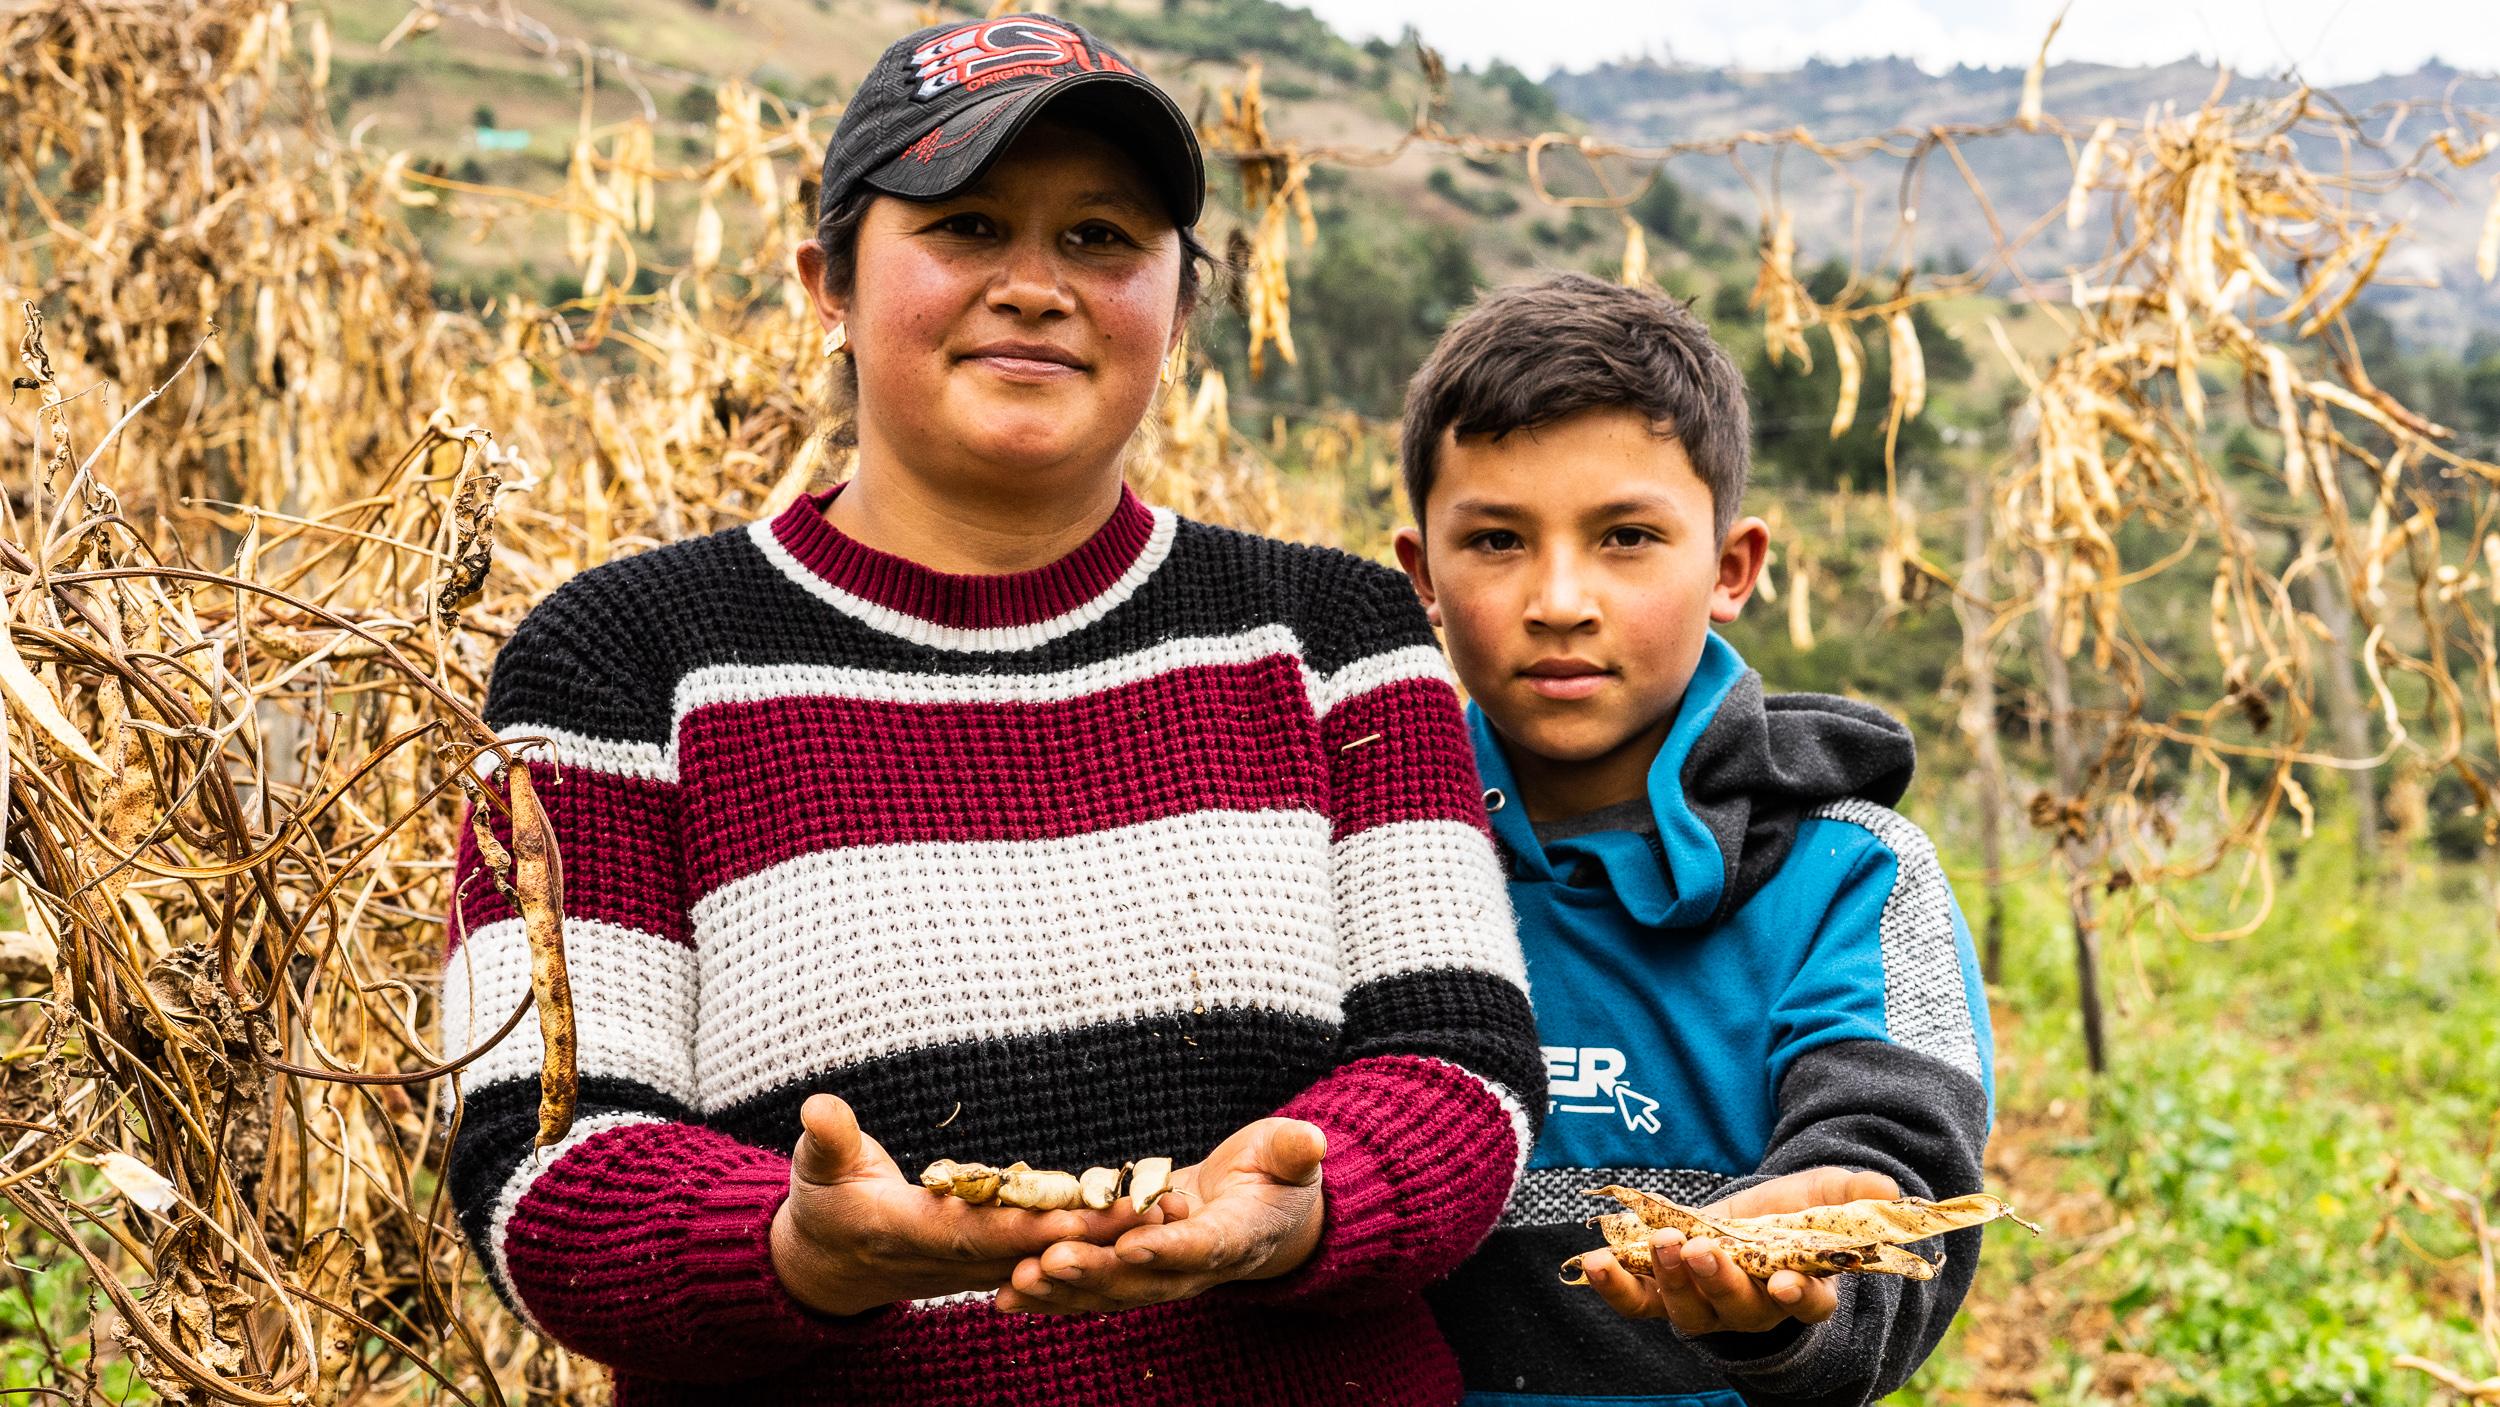 “El cultivo de fríjol ha ayudado a que mis hijos salgan adelante y a tener el sustento del día a día: Maribel, Úmbita, Boyacá